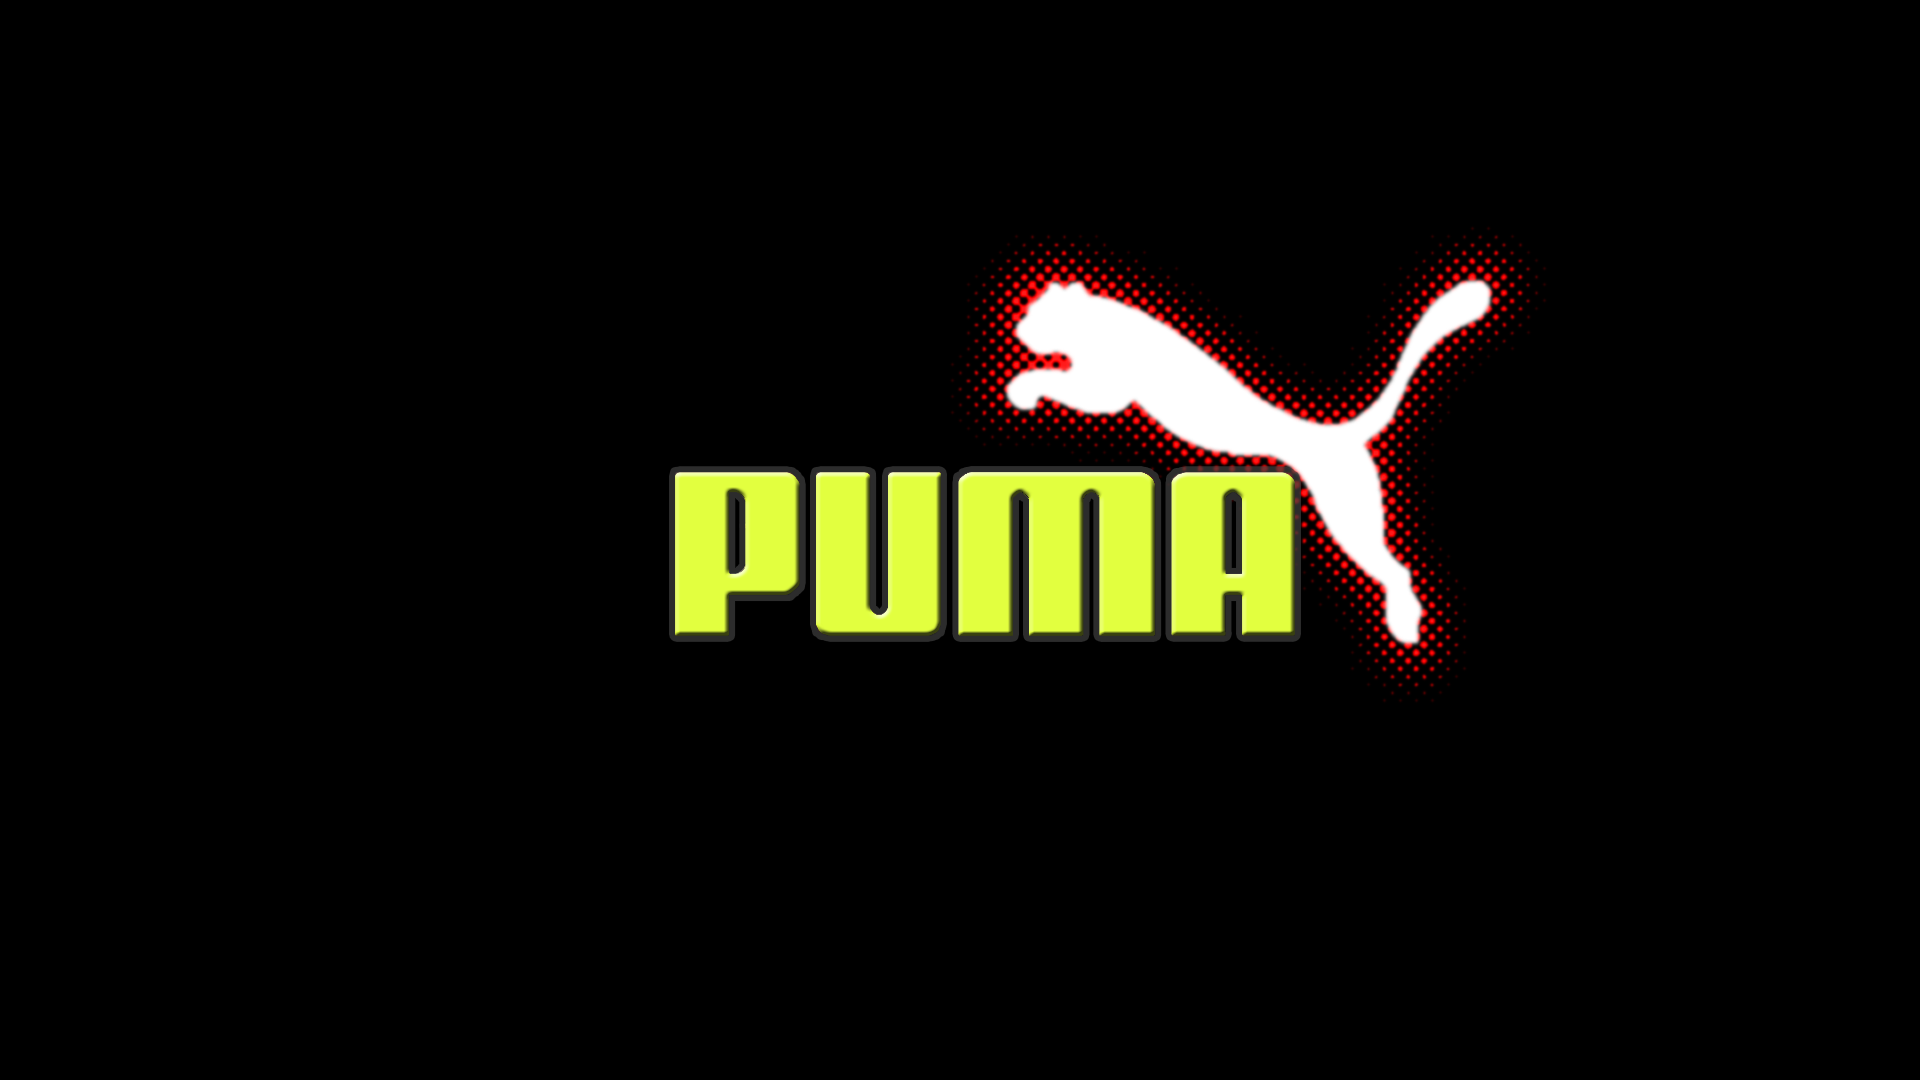 Puma Logo Wallpaper 4644 Hd Wallpapers in Logos   Imagescicom 1920x1080